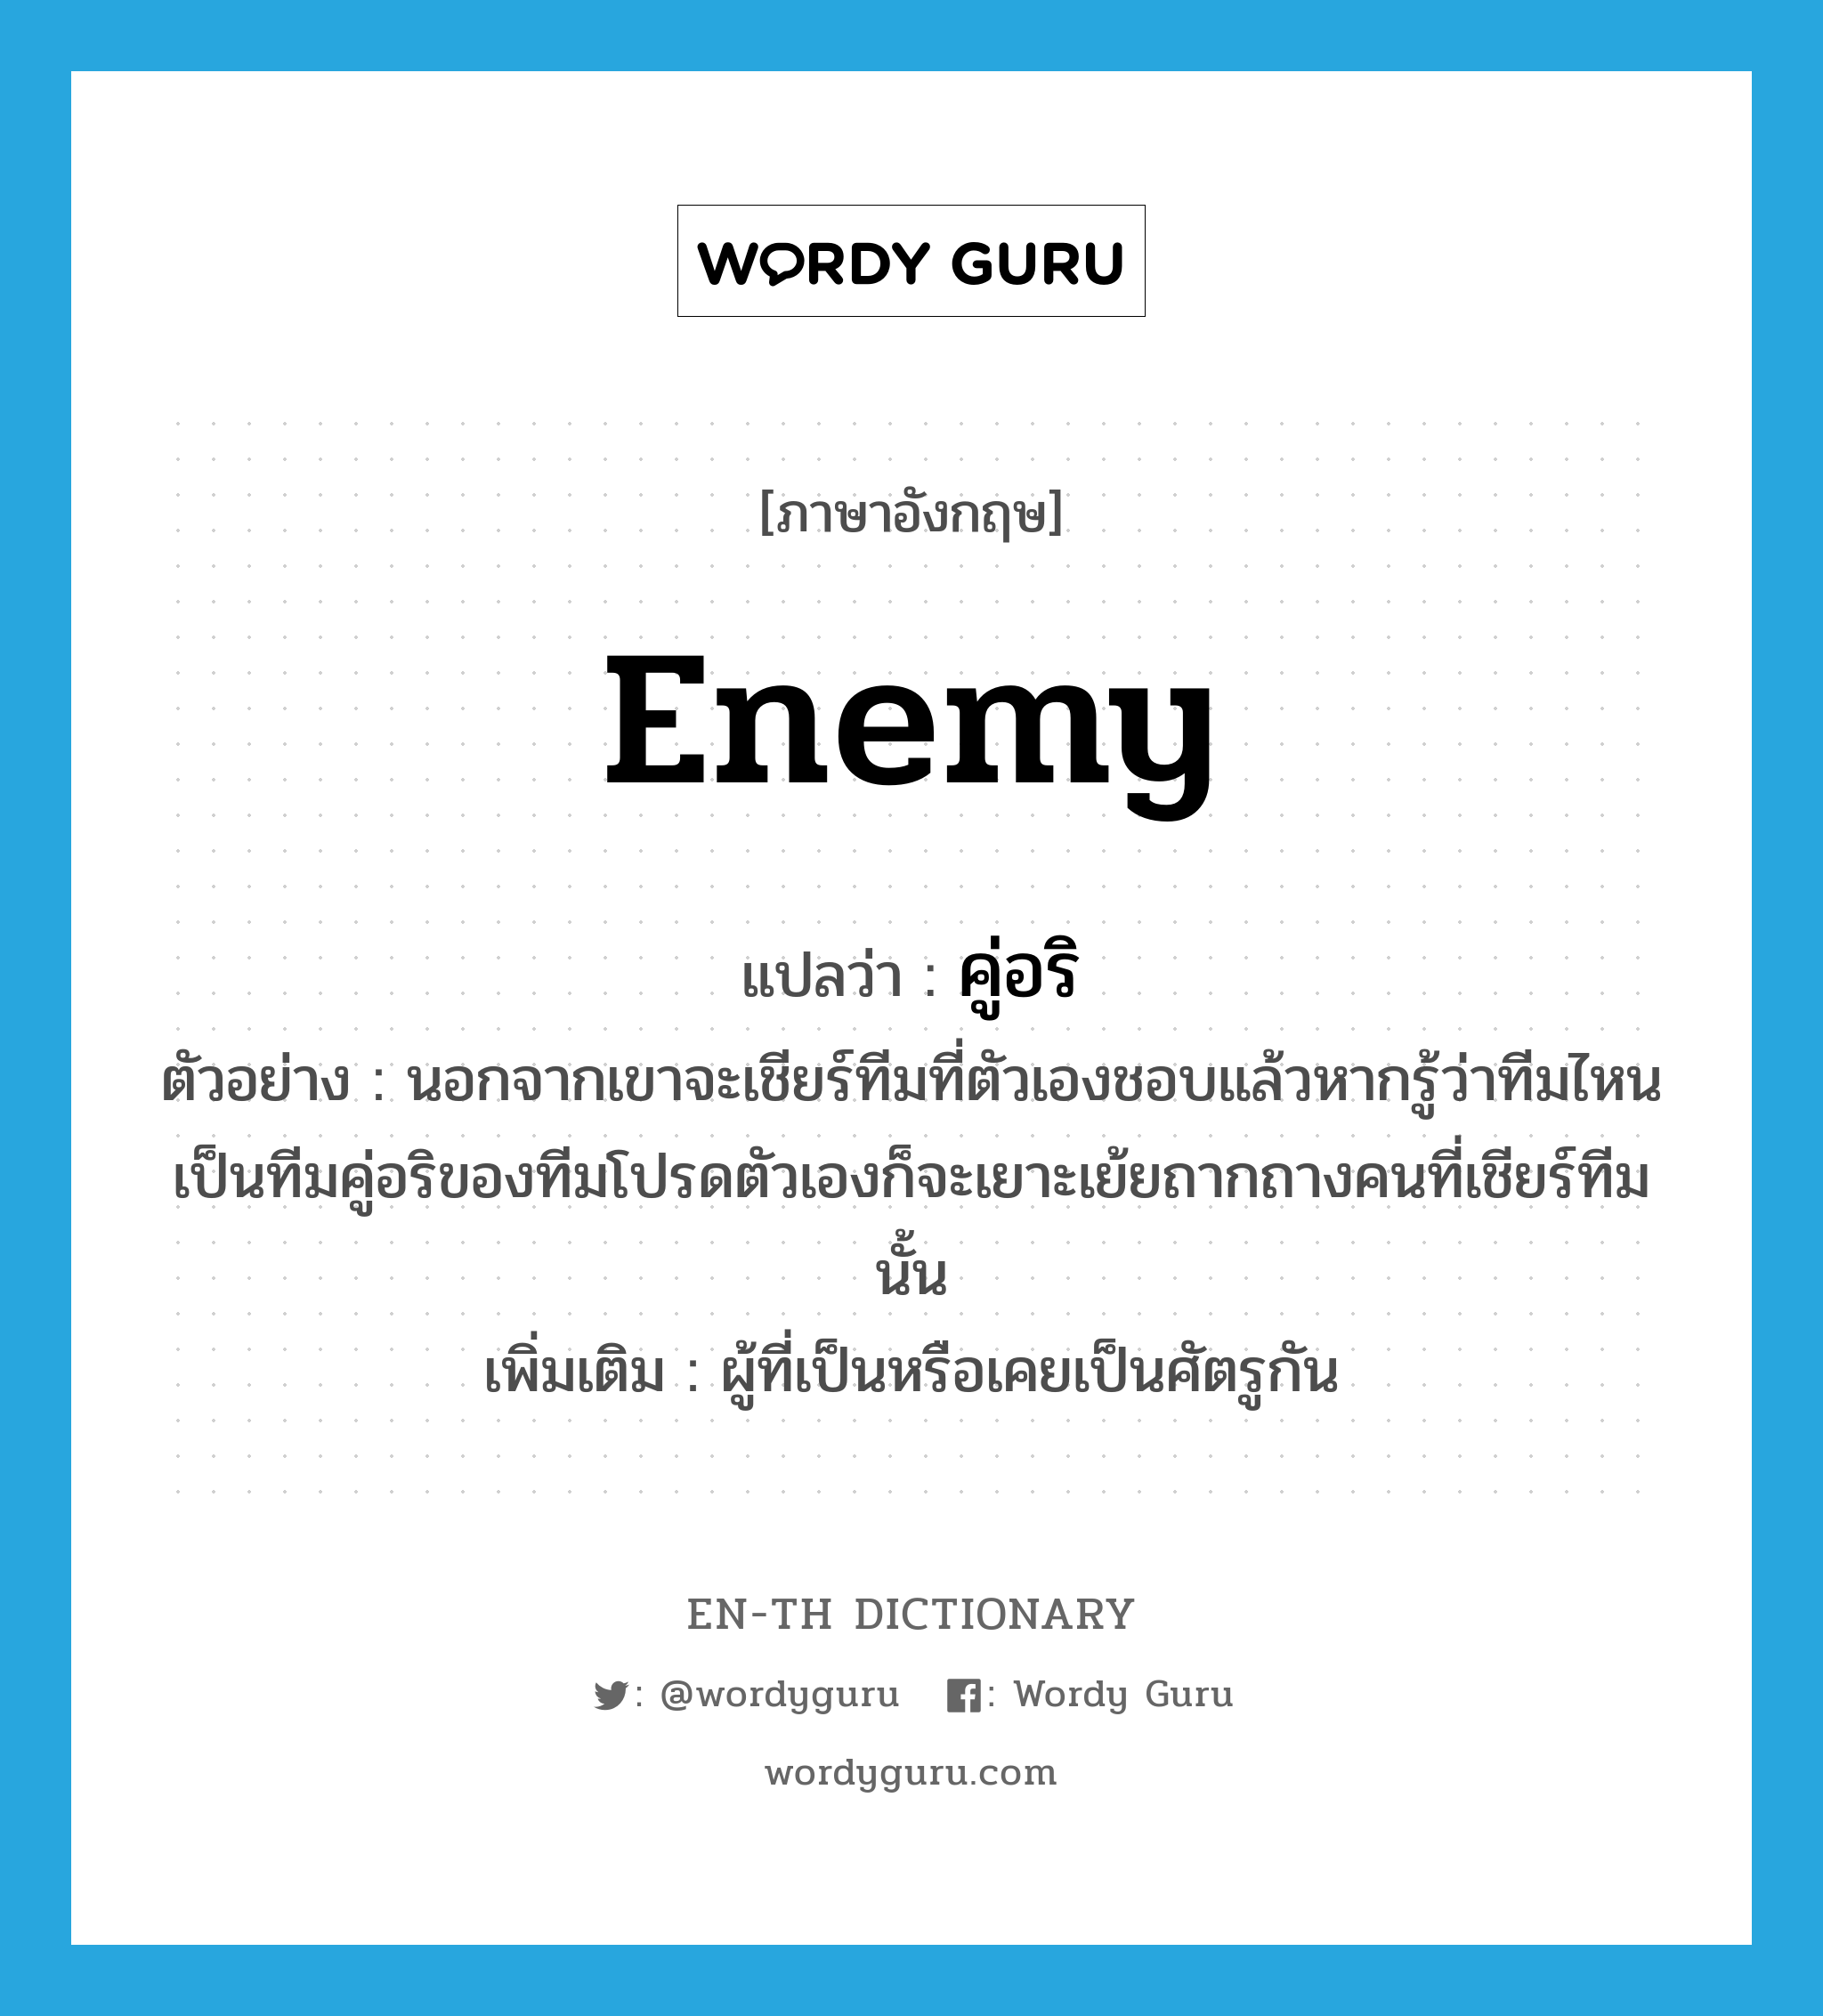 enemy แปลว่า?, คำศัพท์ภาษาอังกฤษ enemy แปลว่า คู่อริ ประเภท N ตัวอย่าง นอกจากเขาจะเชียร์ทีมที่ตัวเองชอบแล้วหากรู้ว่าทีมไหนเป็นทีมคู่อริของทีมโปรดตัวเองก็จะเยาะเย้ยถากถางคนที่เชียร์ทีมนั้น เพิ่มเติม ผู้ที่เป็นหรือเคยเป็นศัตรูกัน หมวด N